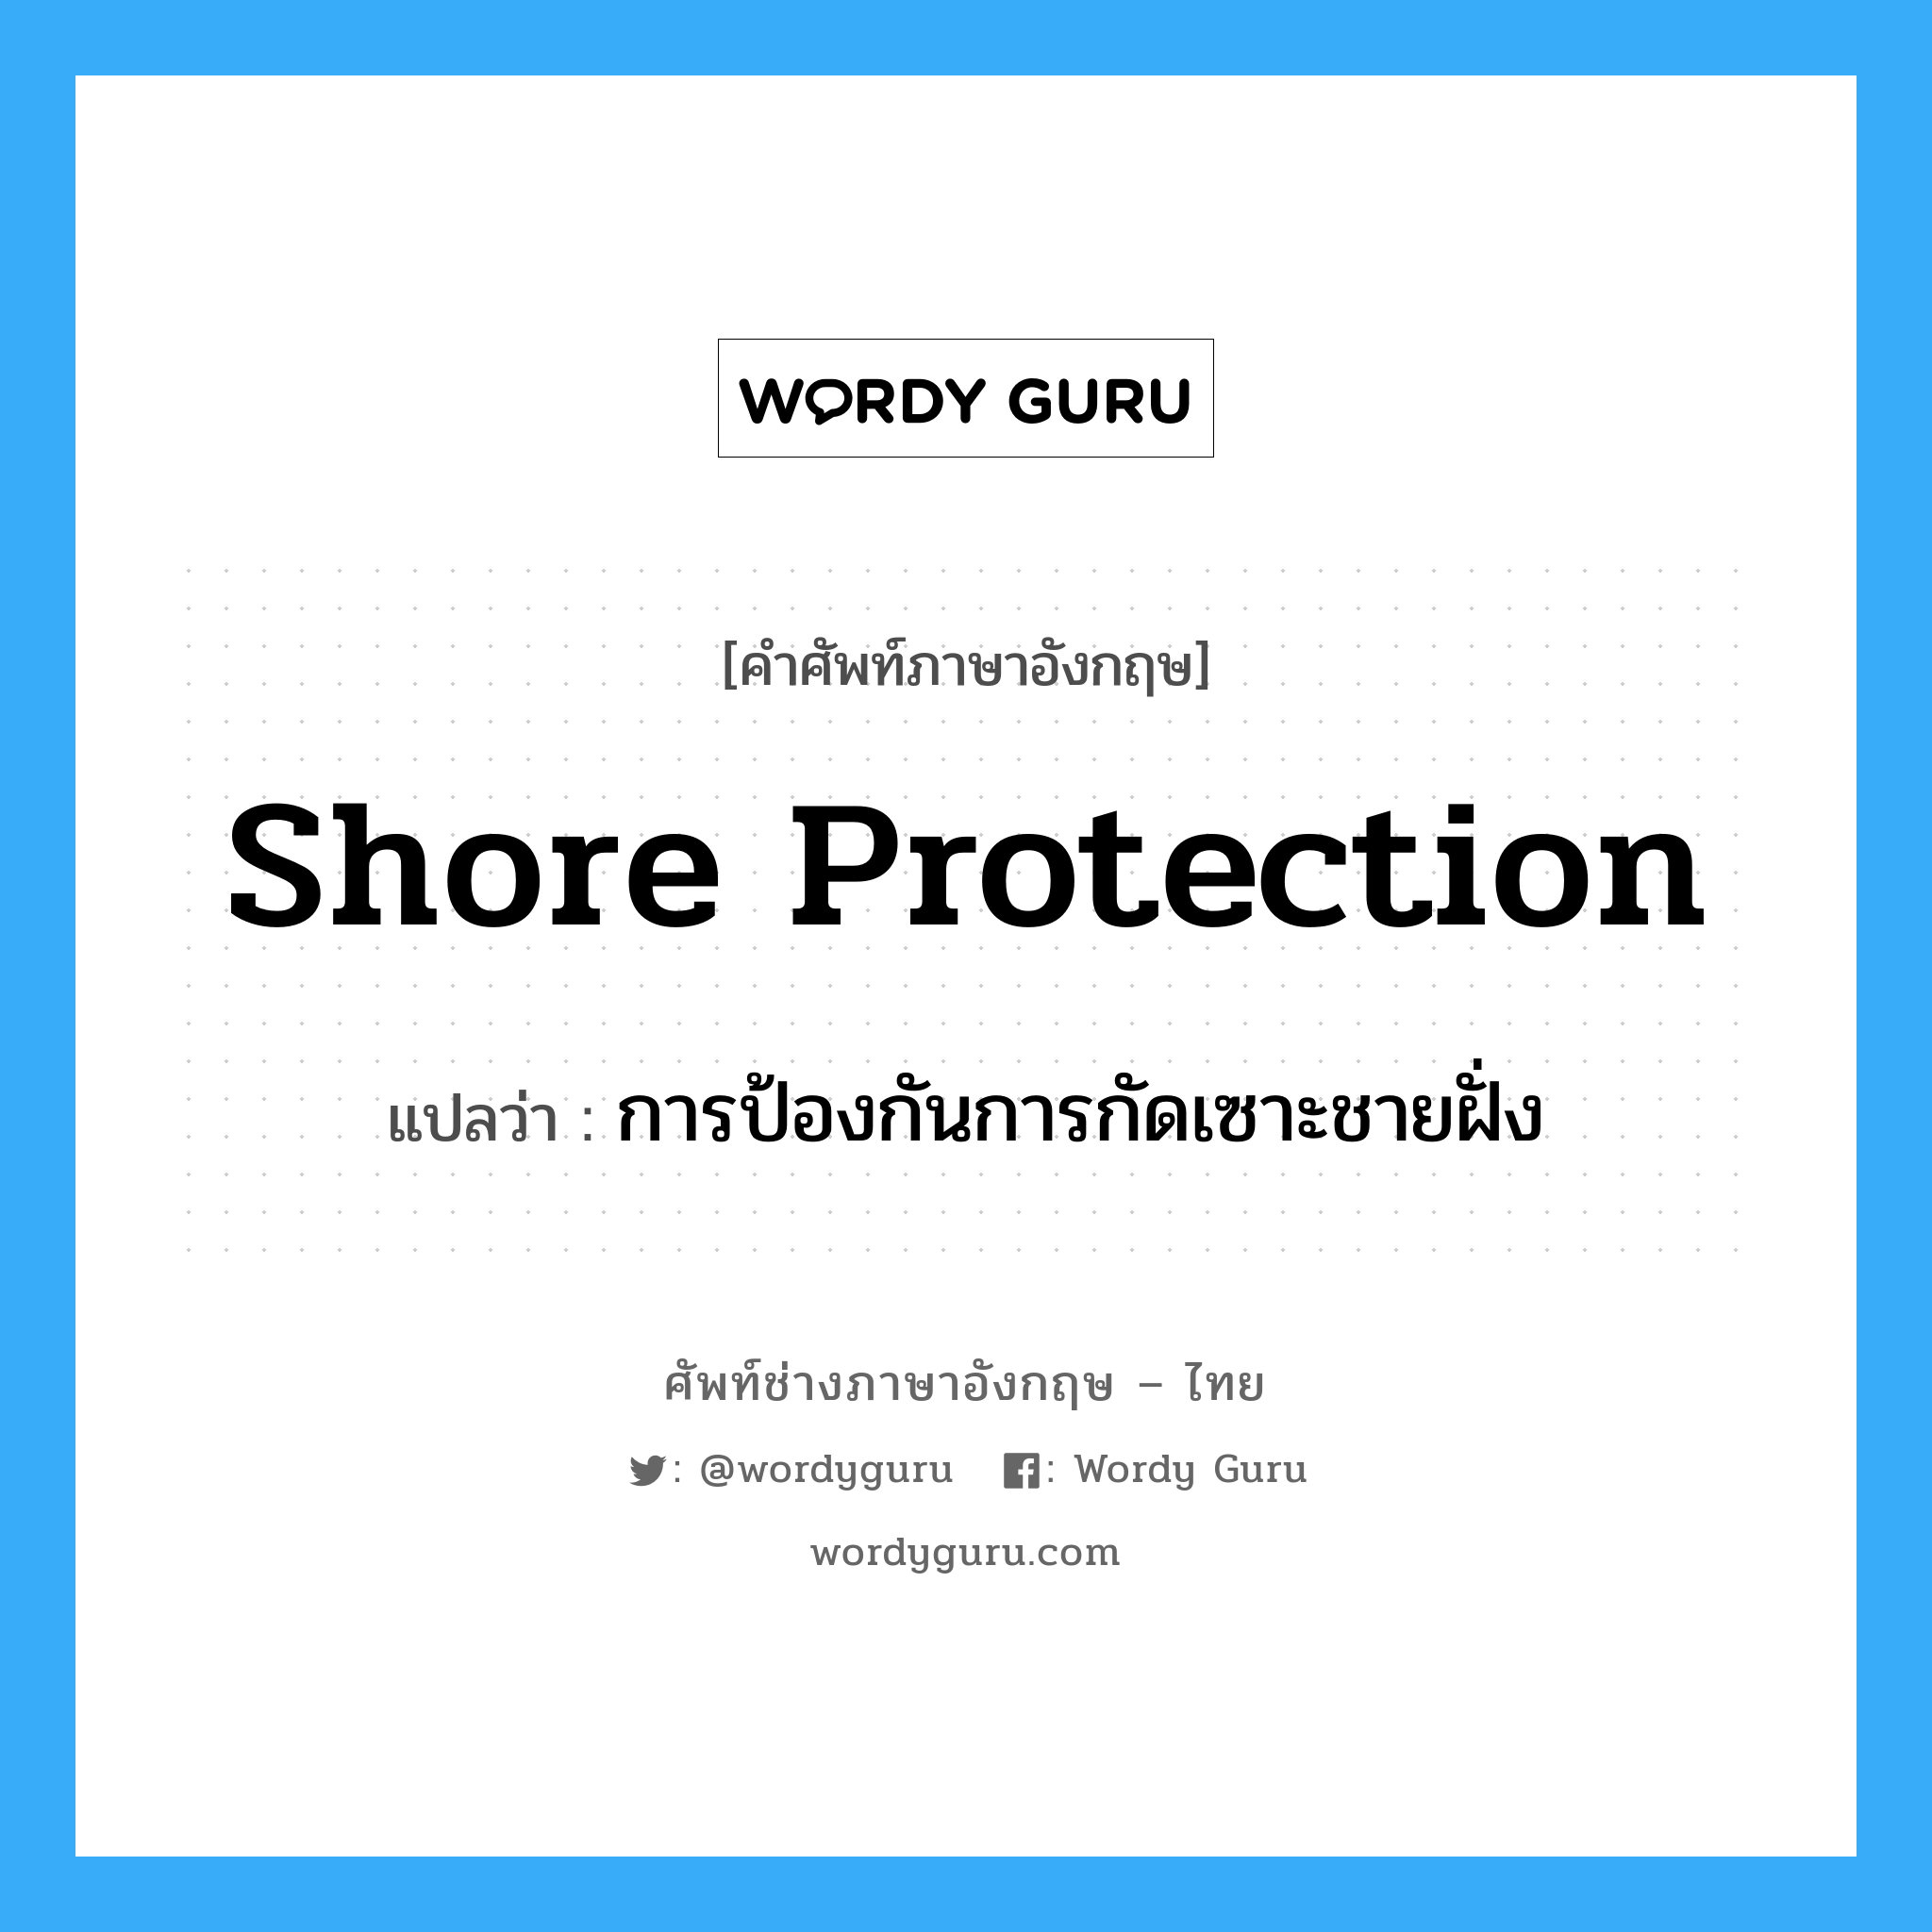 shore protection แปลว่า?, คำศัพท์ช่างภาษาอังกฤษ - ไทย shore protection คำศัพท์ภาษาอังกฤษ shore protection แปลว่า การป้องกันการกัดเซาะชายฝั่ง